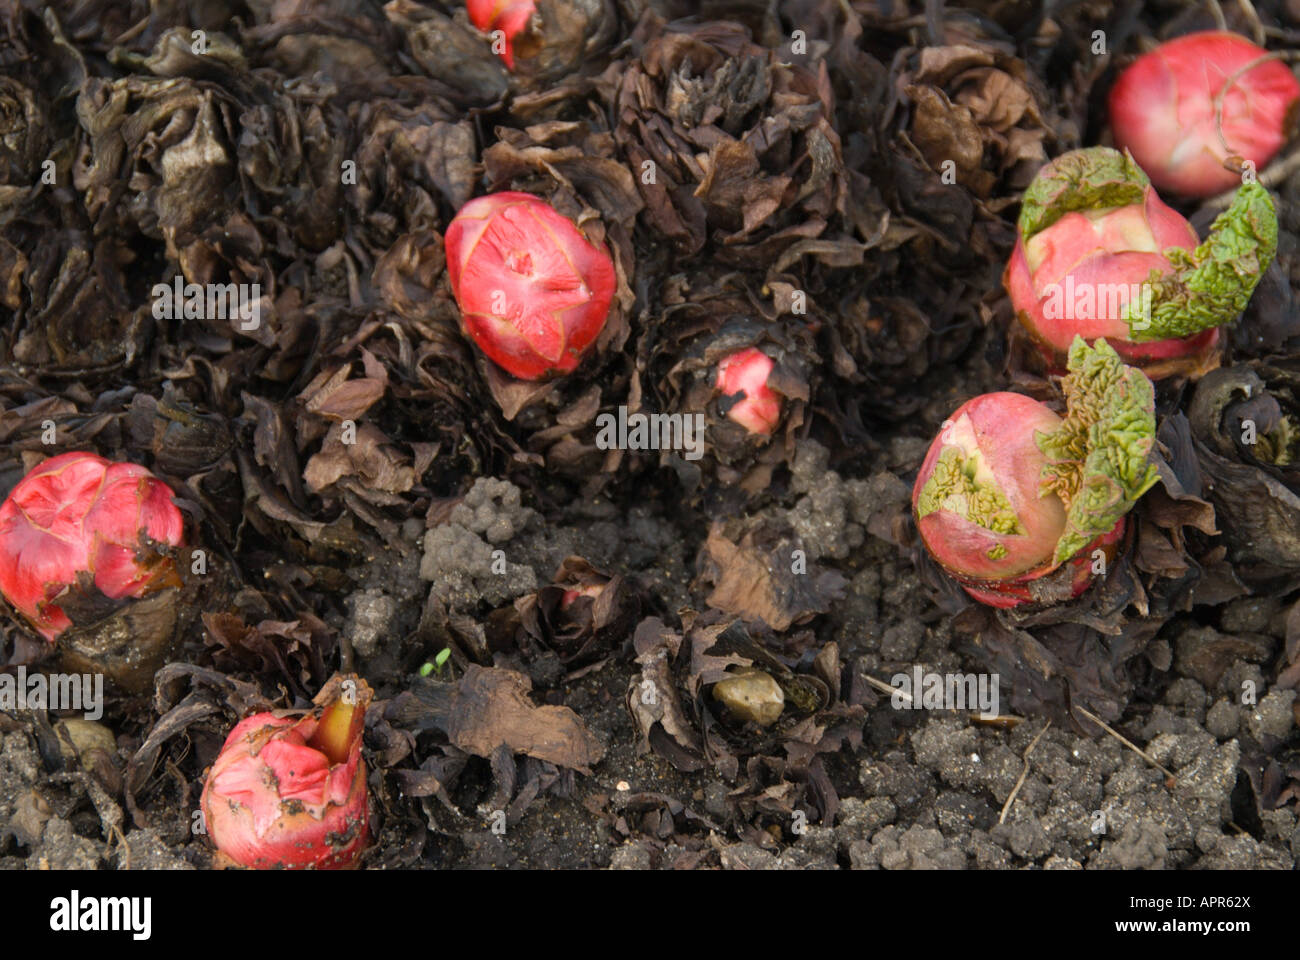 Rhabarber Rosenkohl rot mit neuen grünen Blättern auf einem organischen Schrebergarten. Stockfoto